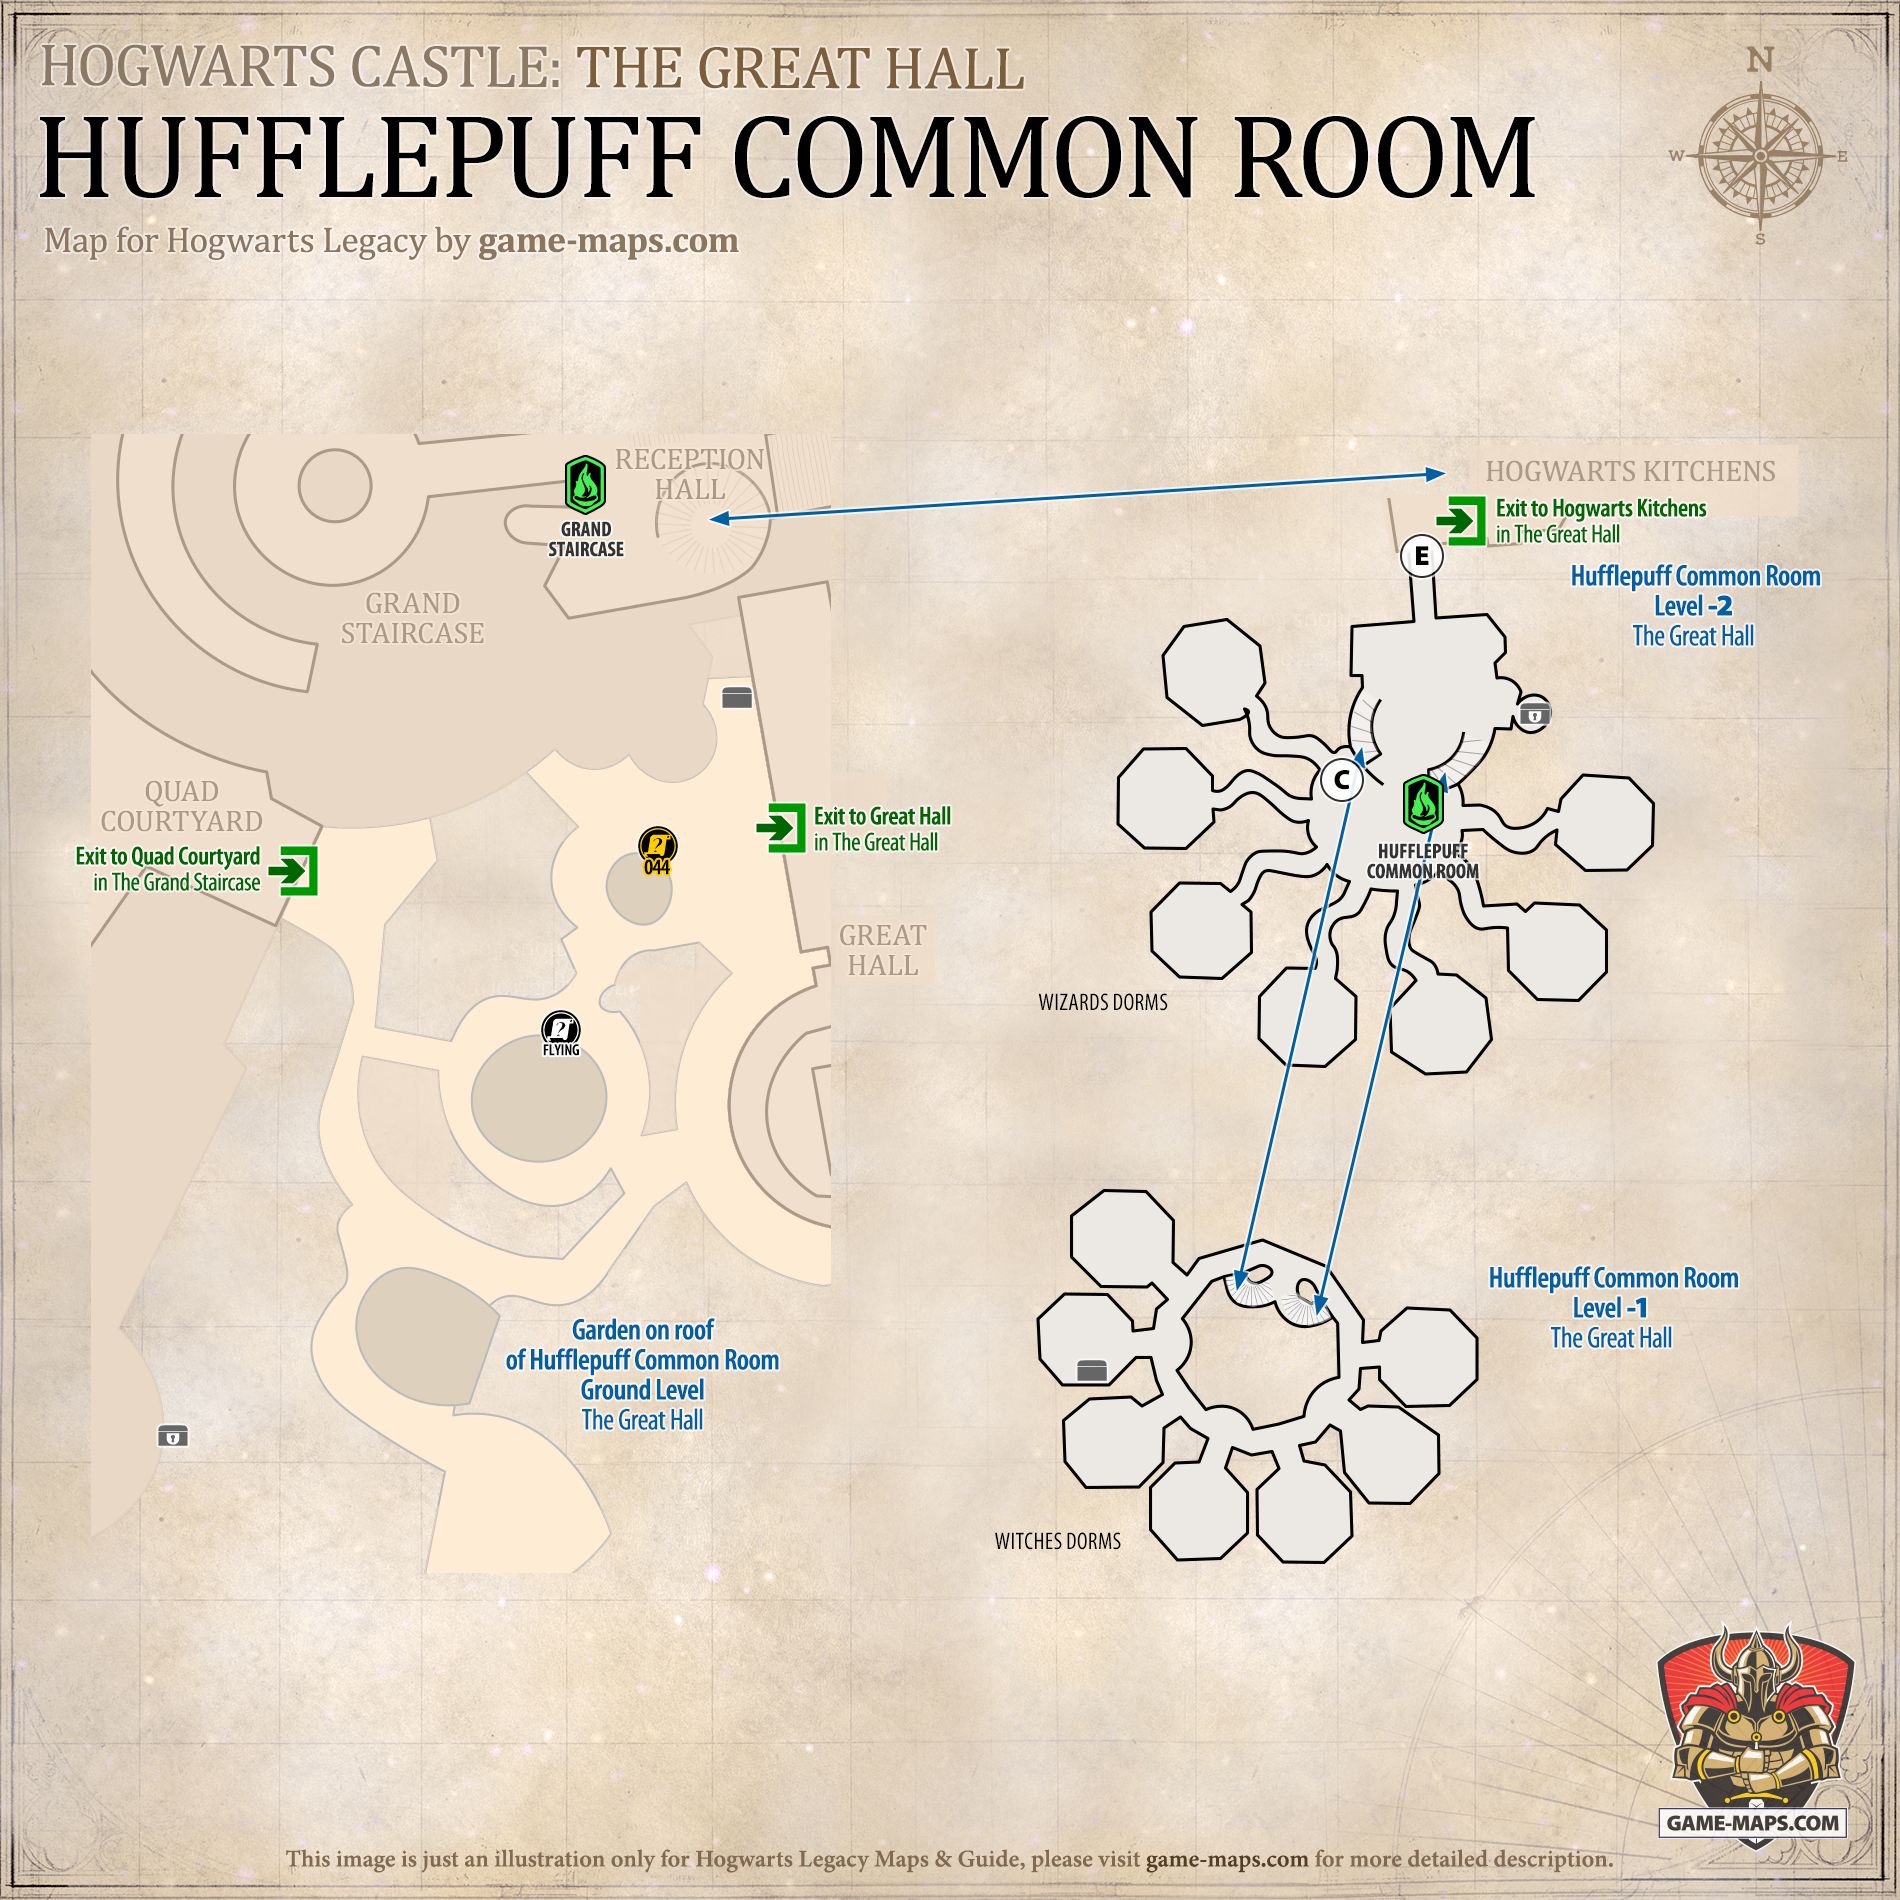 Χάρτης κοινής αίθουσας Hufflepuff για την κληρονομιά Hogwarts